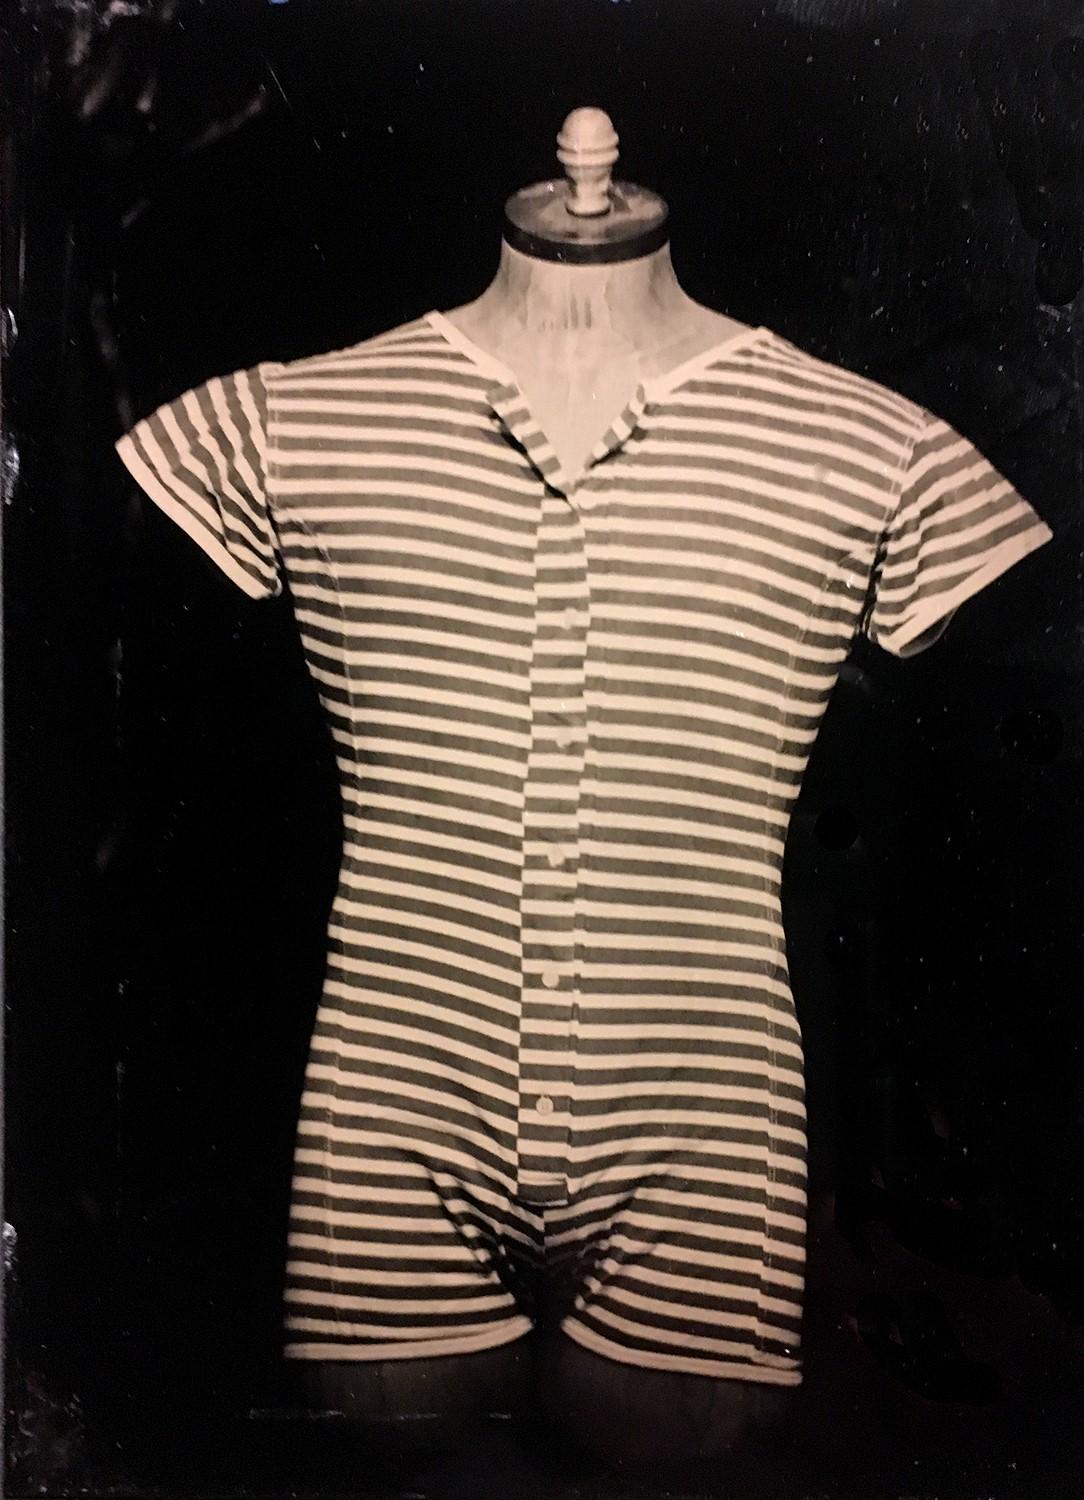 Stripes (Tin Type Photograph of Vintage Men's Swimwear, Vintage Frame)